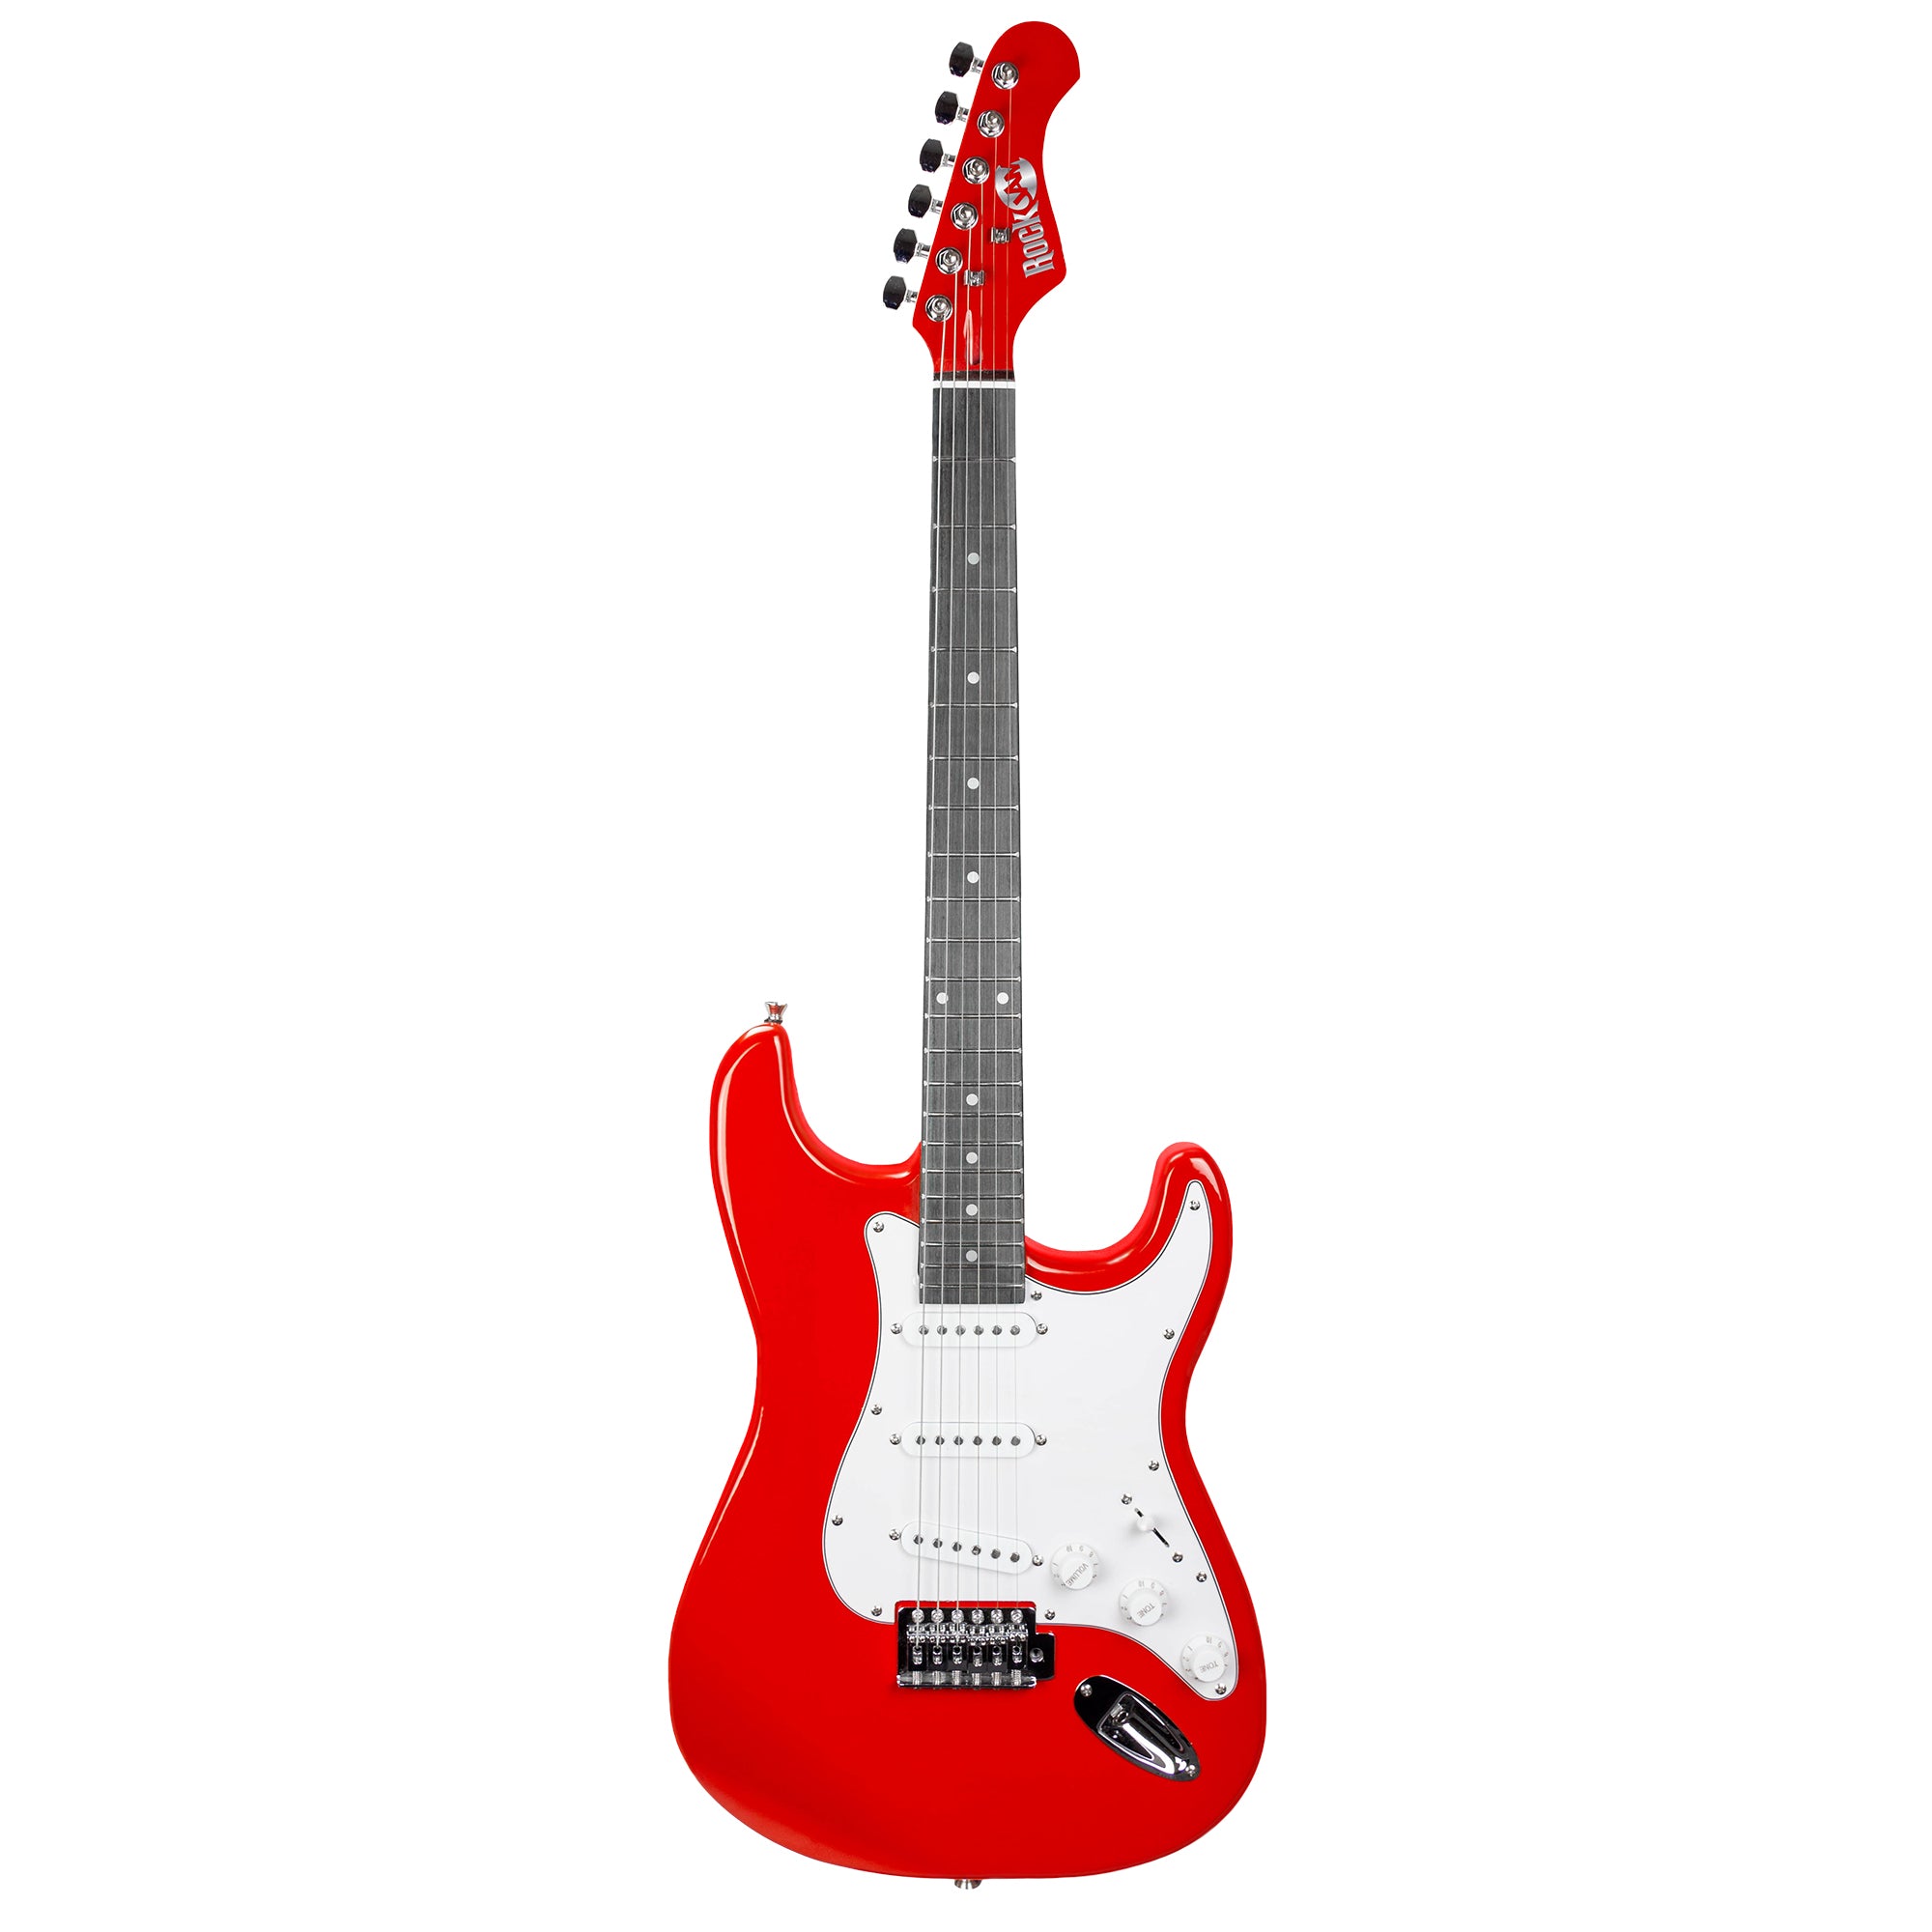 RockJam FS Electric Guitar SK RJEG06 Red